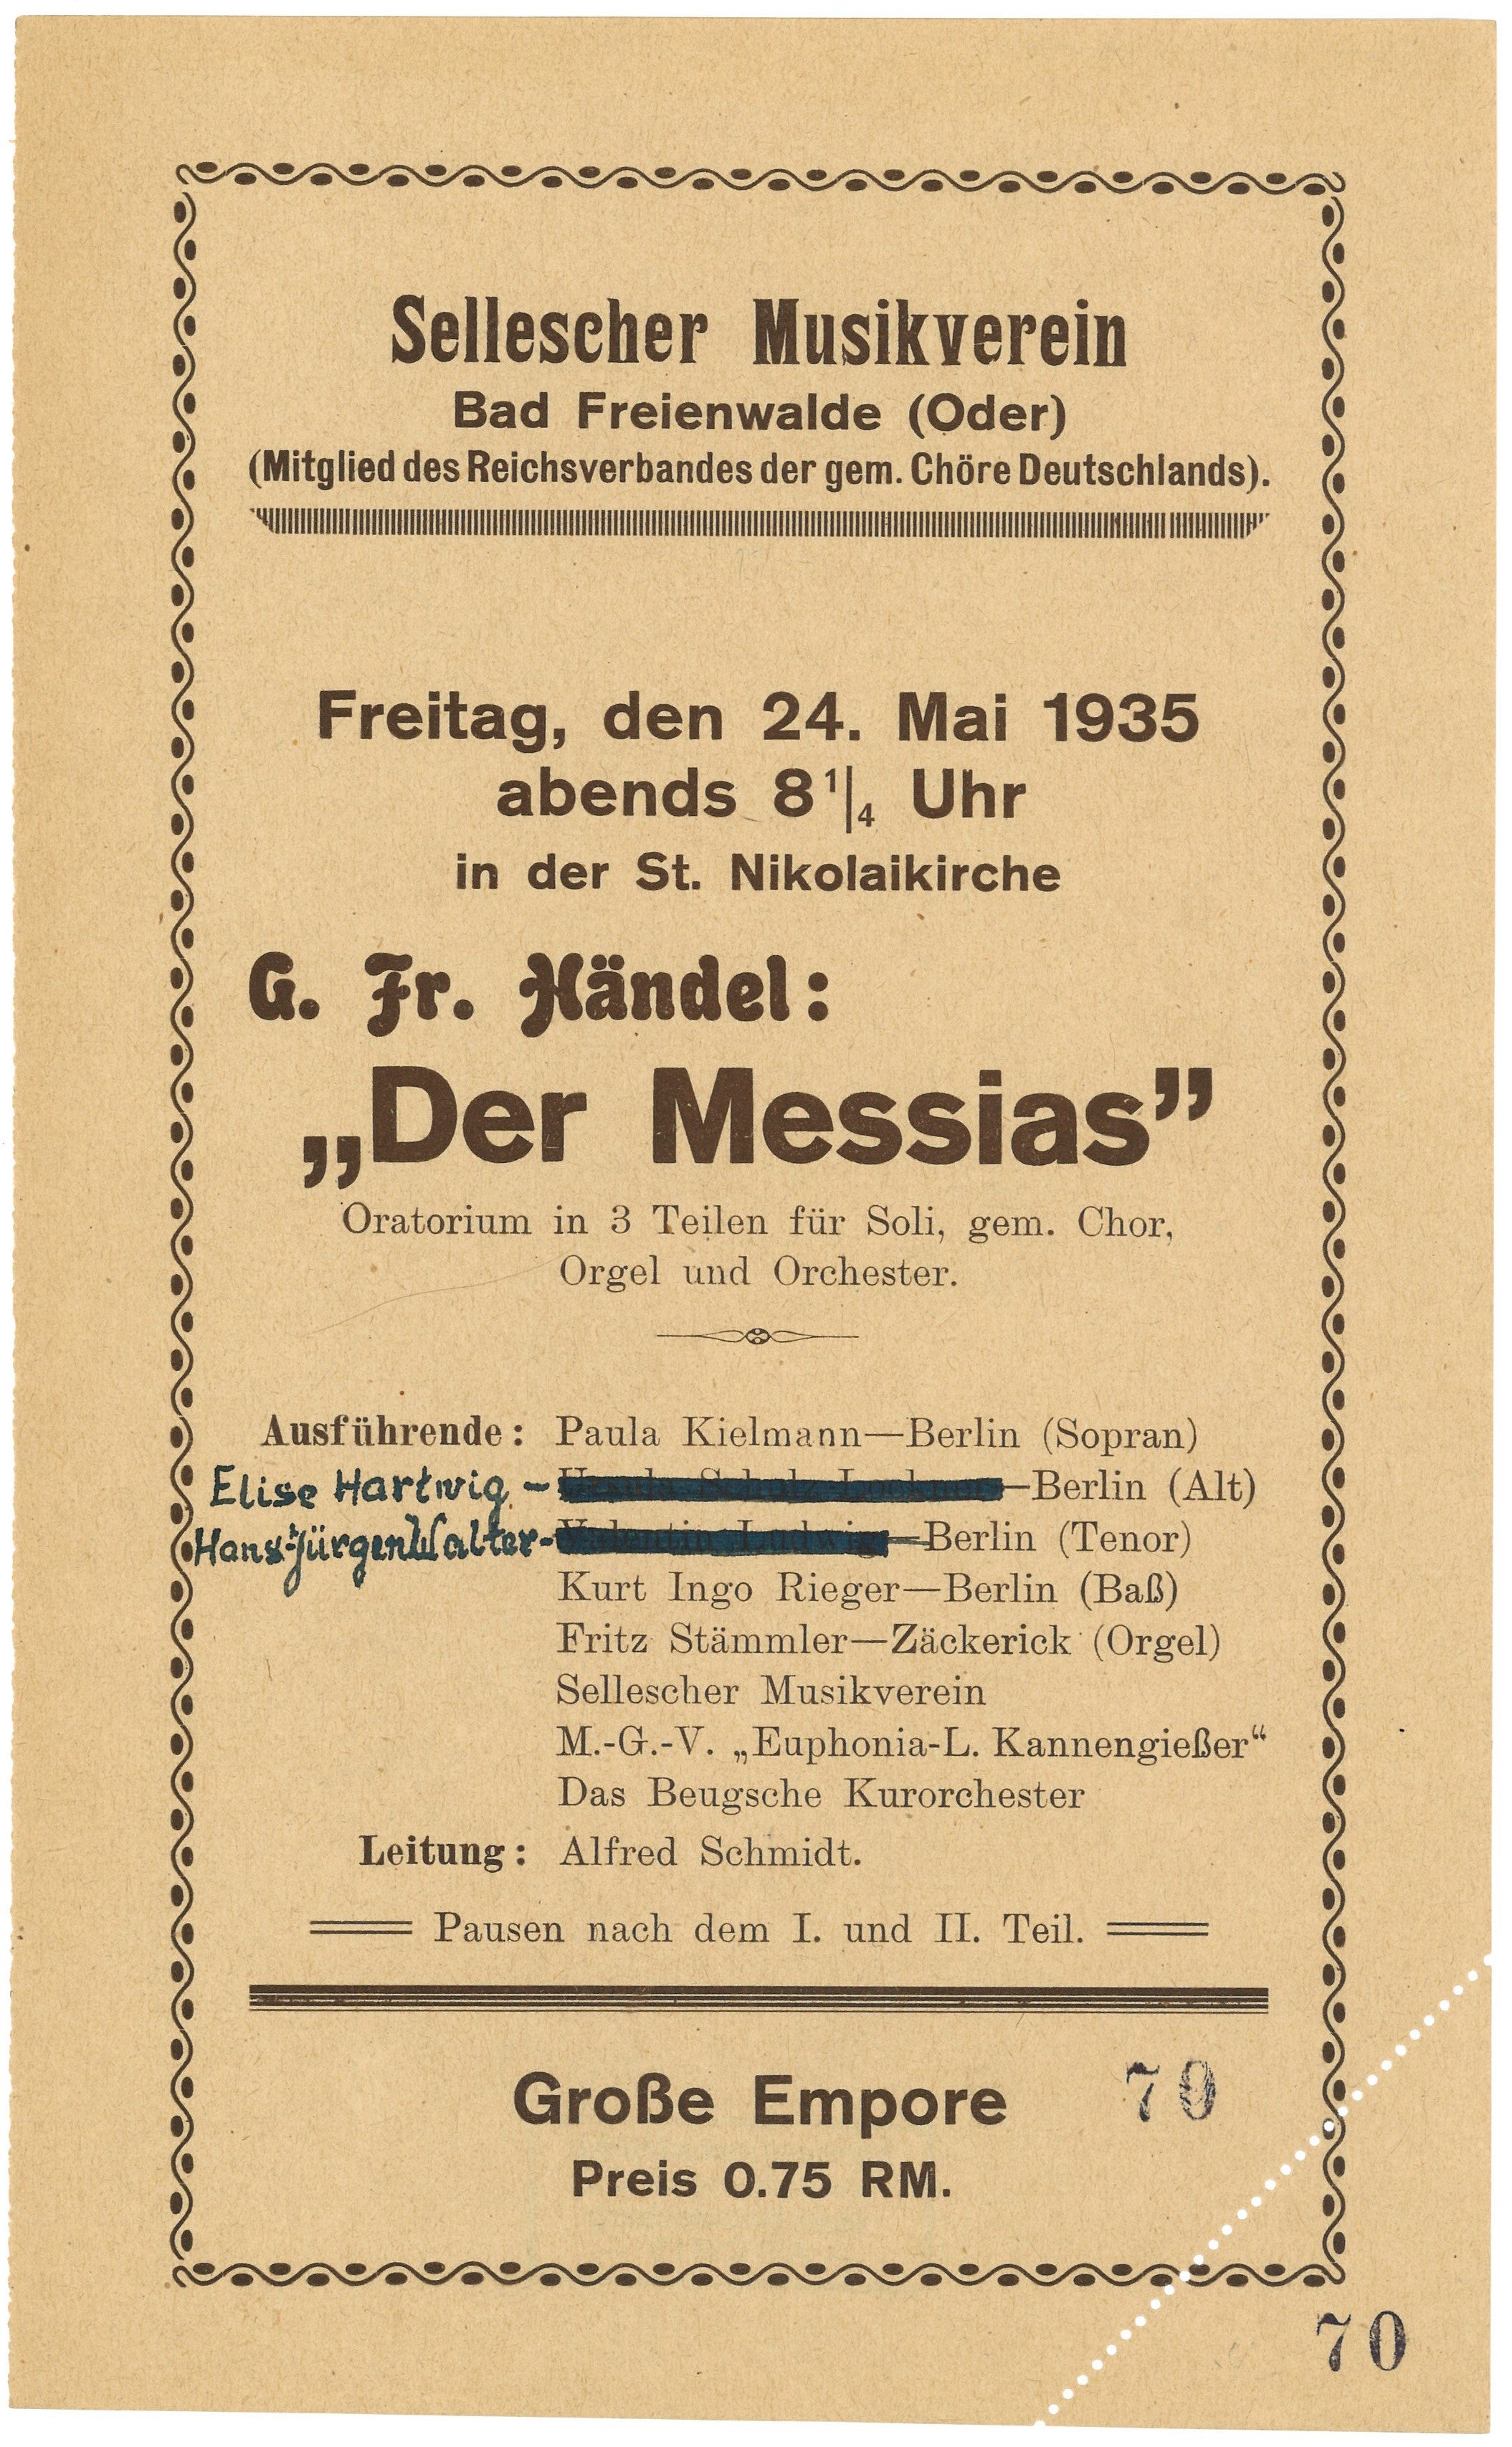 Programm des Selleschen Musikvereins Bad Freienwalde (Oder) für "Der Messias" am 24. Mai 1935 in der Nikolaikirche (Landesgeschichtliche Vereinigung für die Mark Brandenburg e.V., Archiv CC BY)